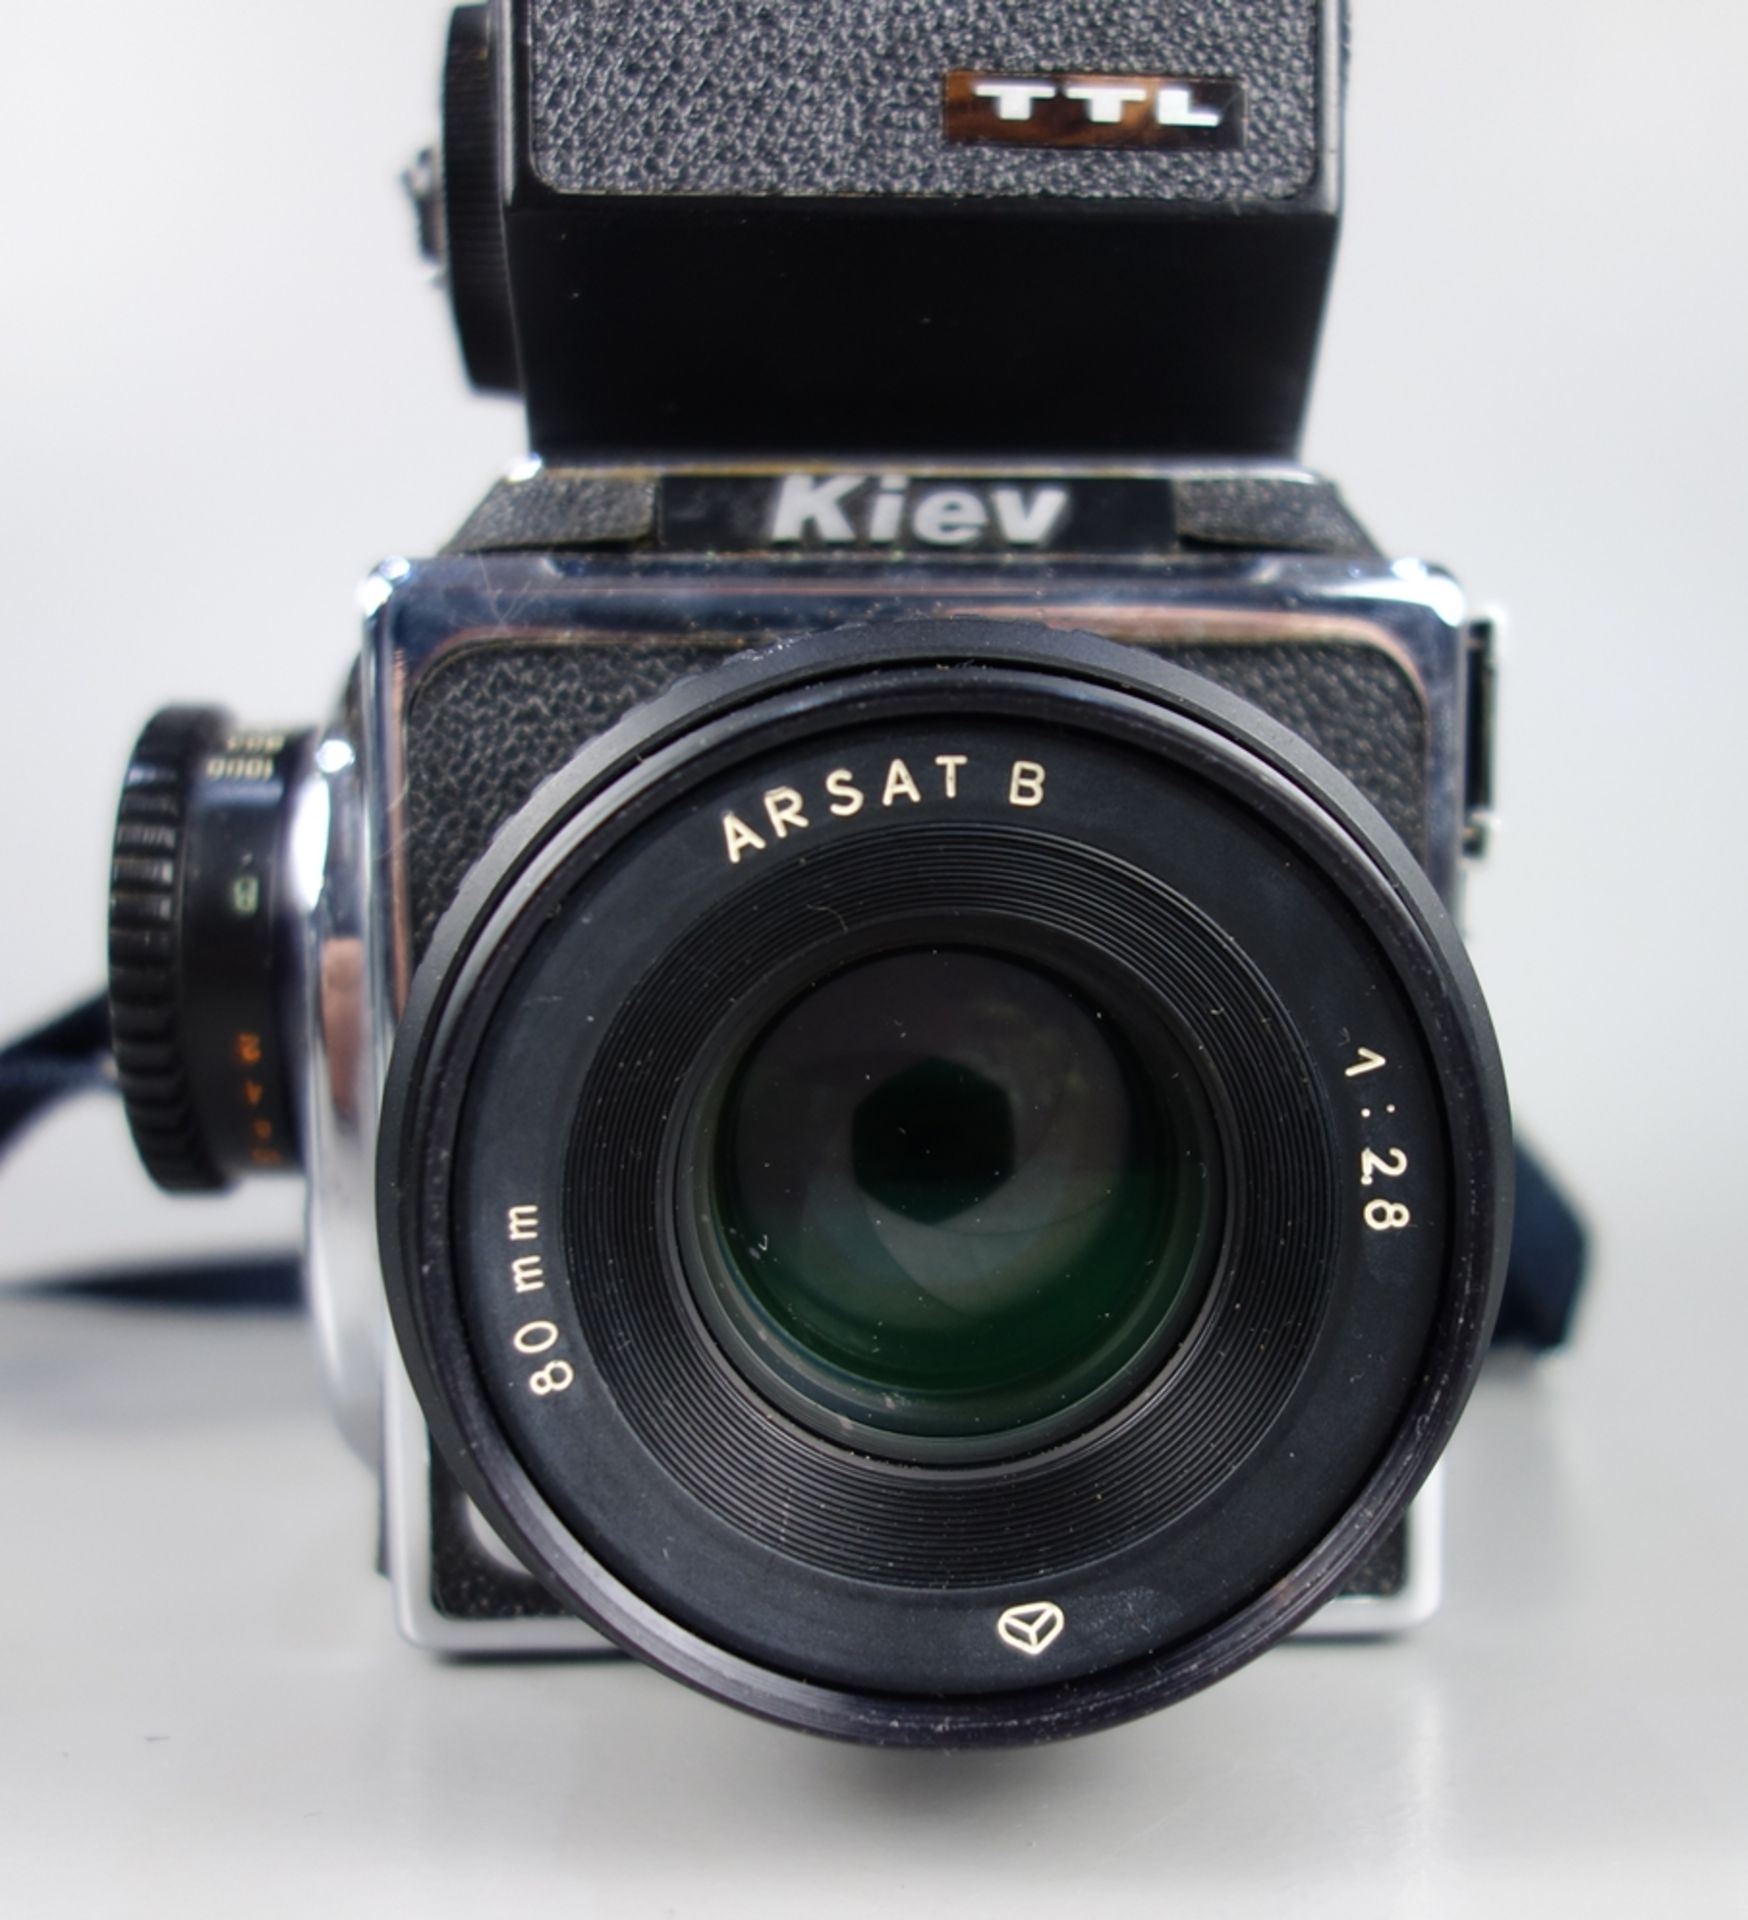 Mittelformatkamera "Kiev 88 TTL", mit Objektiv Arsat B 1:2,8/80mm, in Original-Tasche mit Zubehör - Bild 2 aus 5